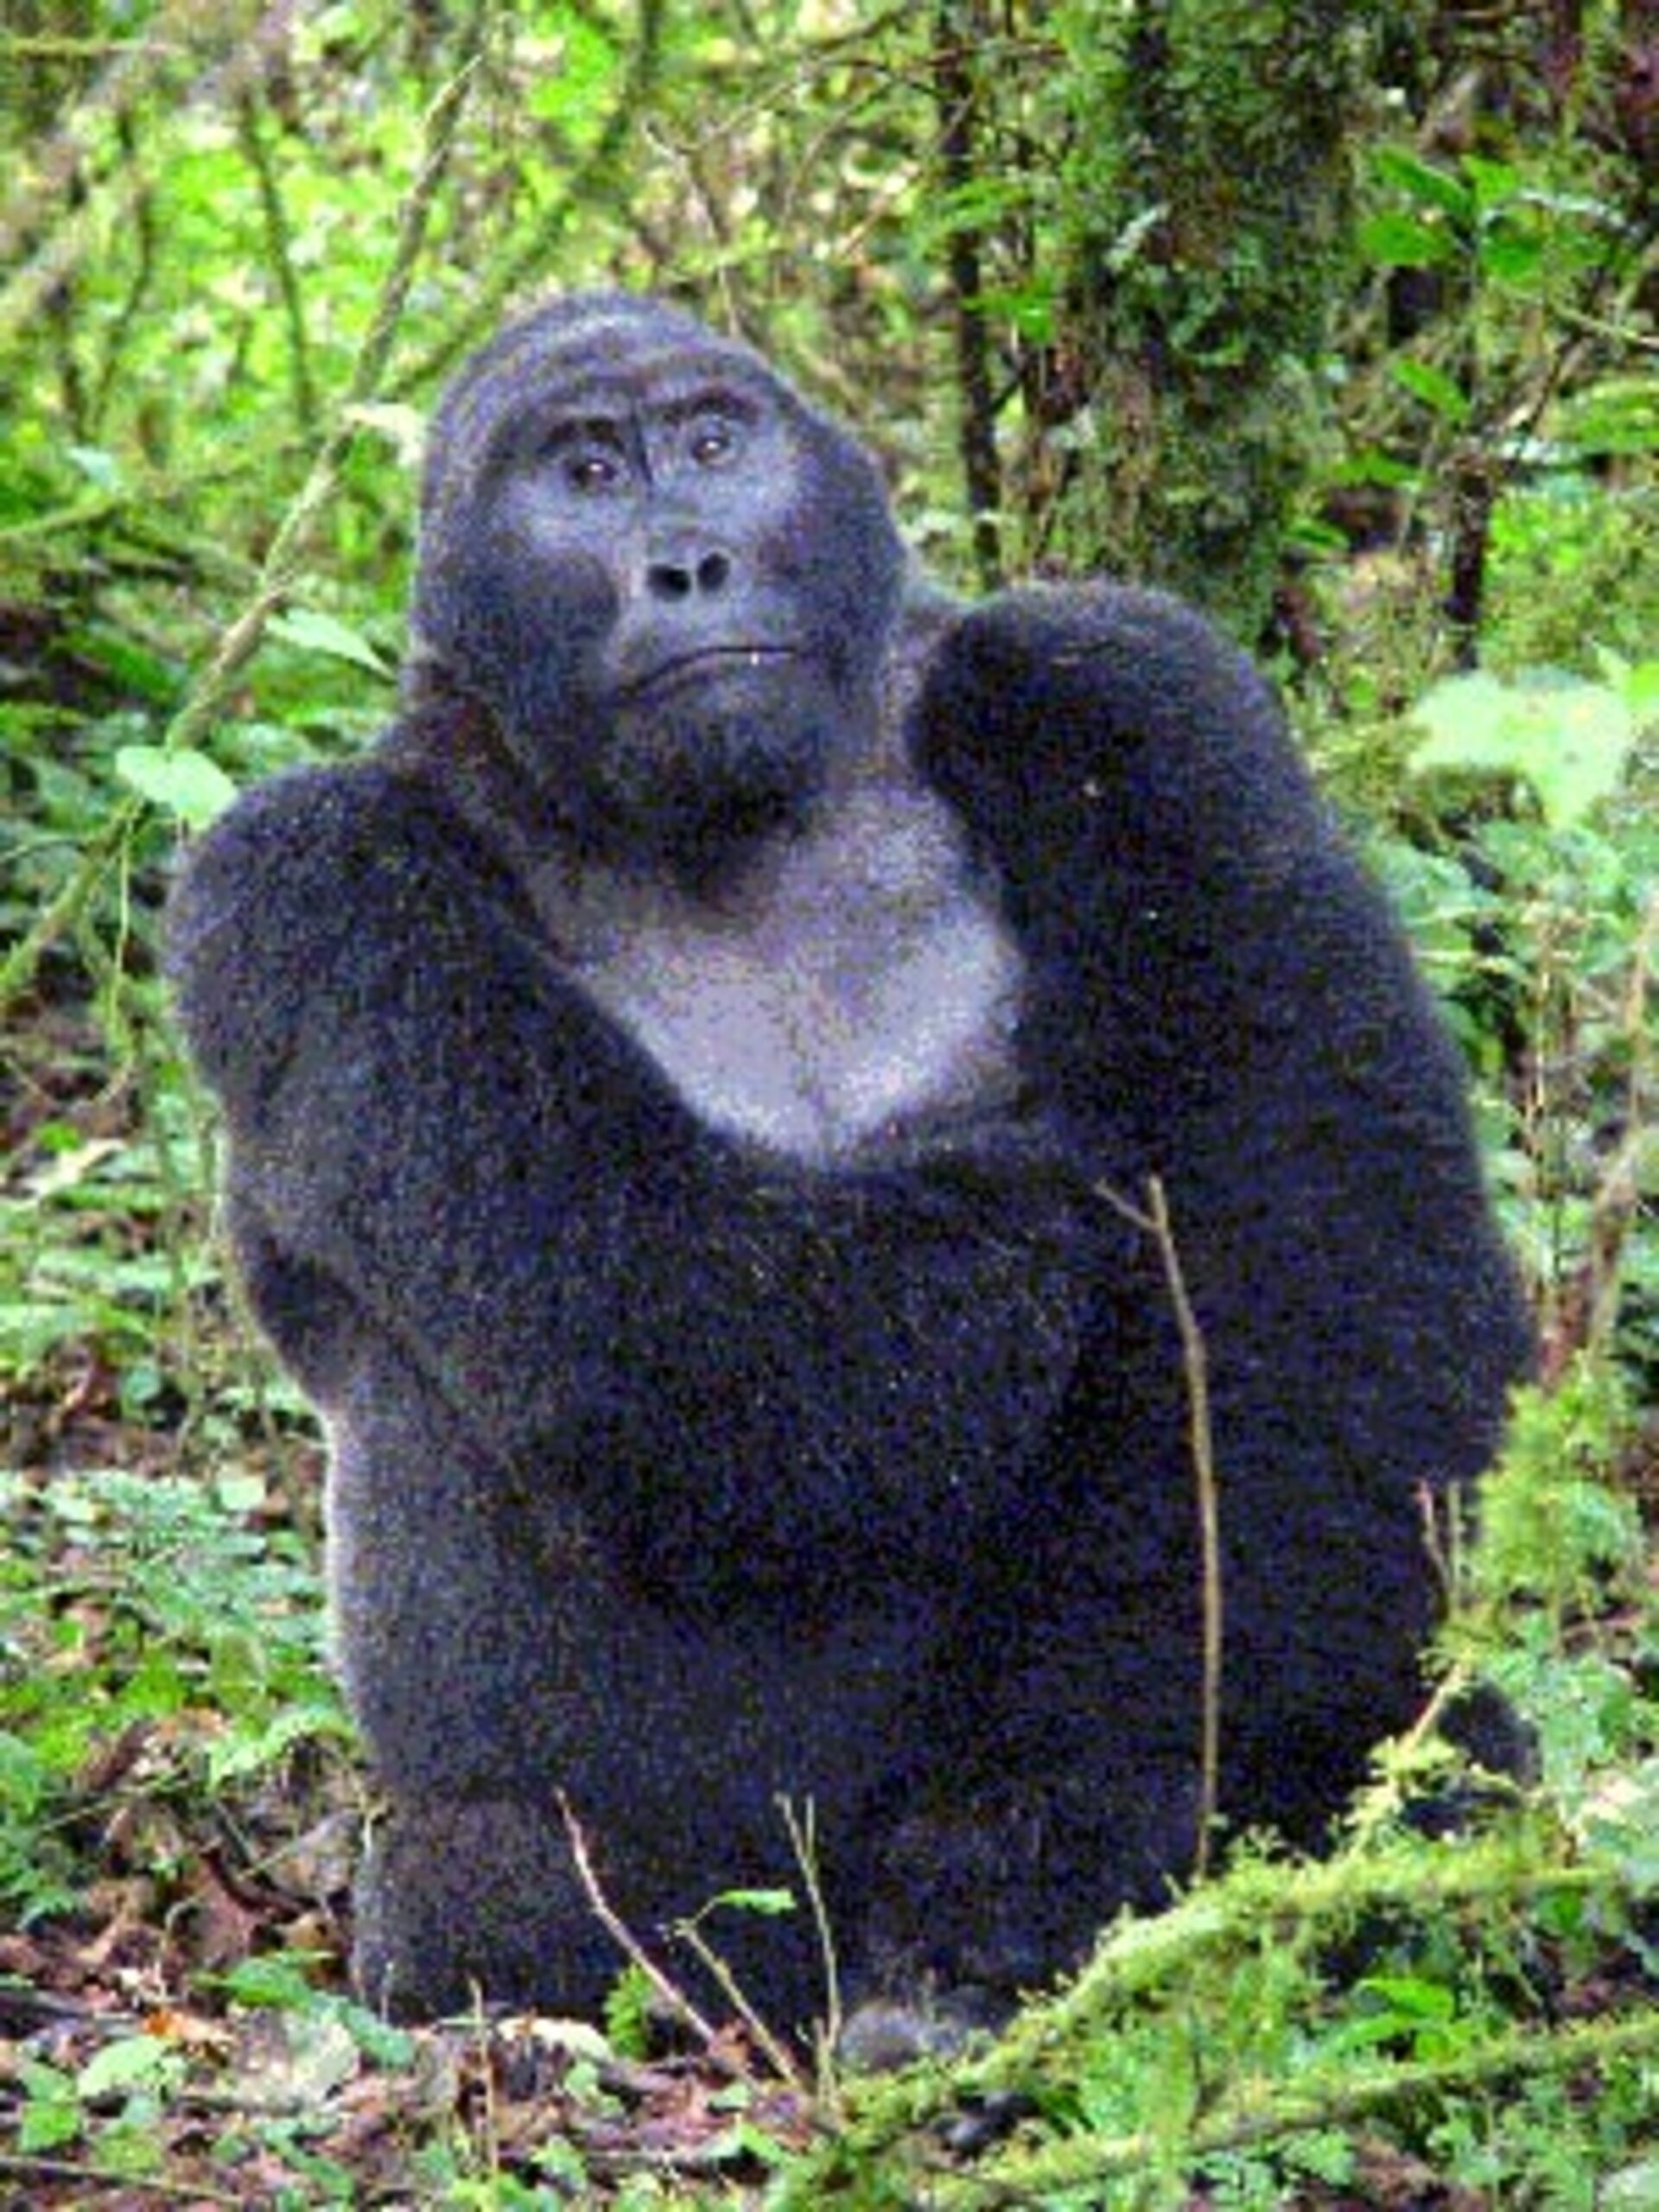 Gorilla in Uganda's Bwindi Impenetrable National Park